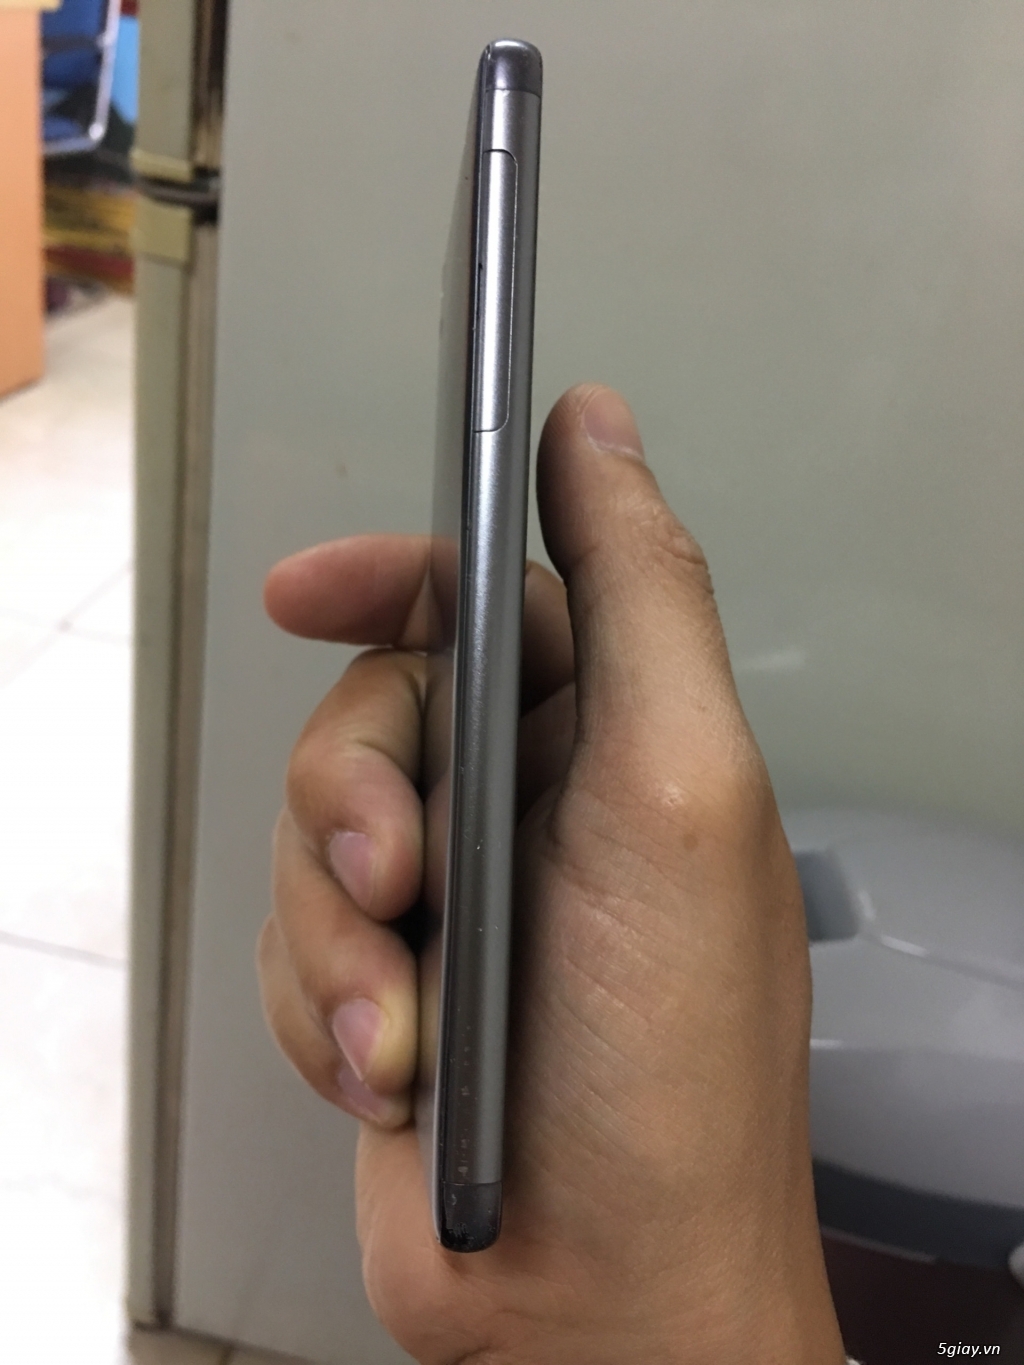 Bán điện thoại Sony XA còn bảo hành đến T6/2018 - 1